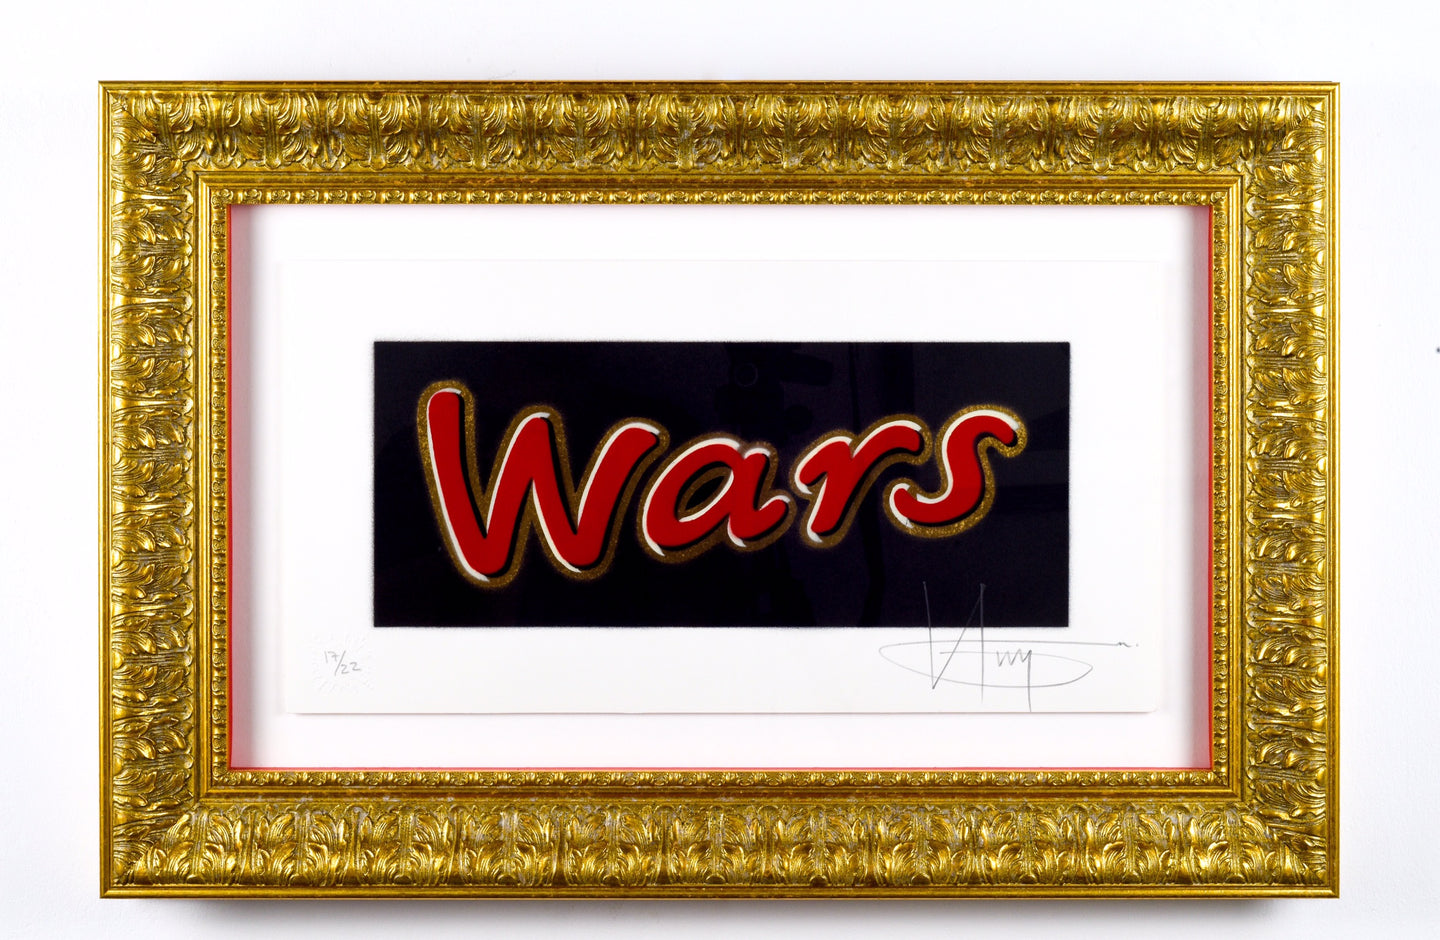 Wars - Framed